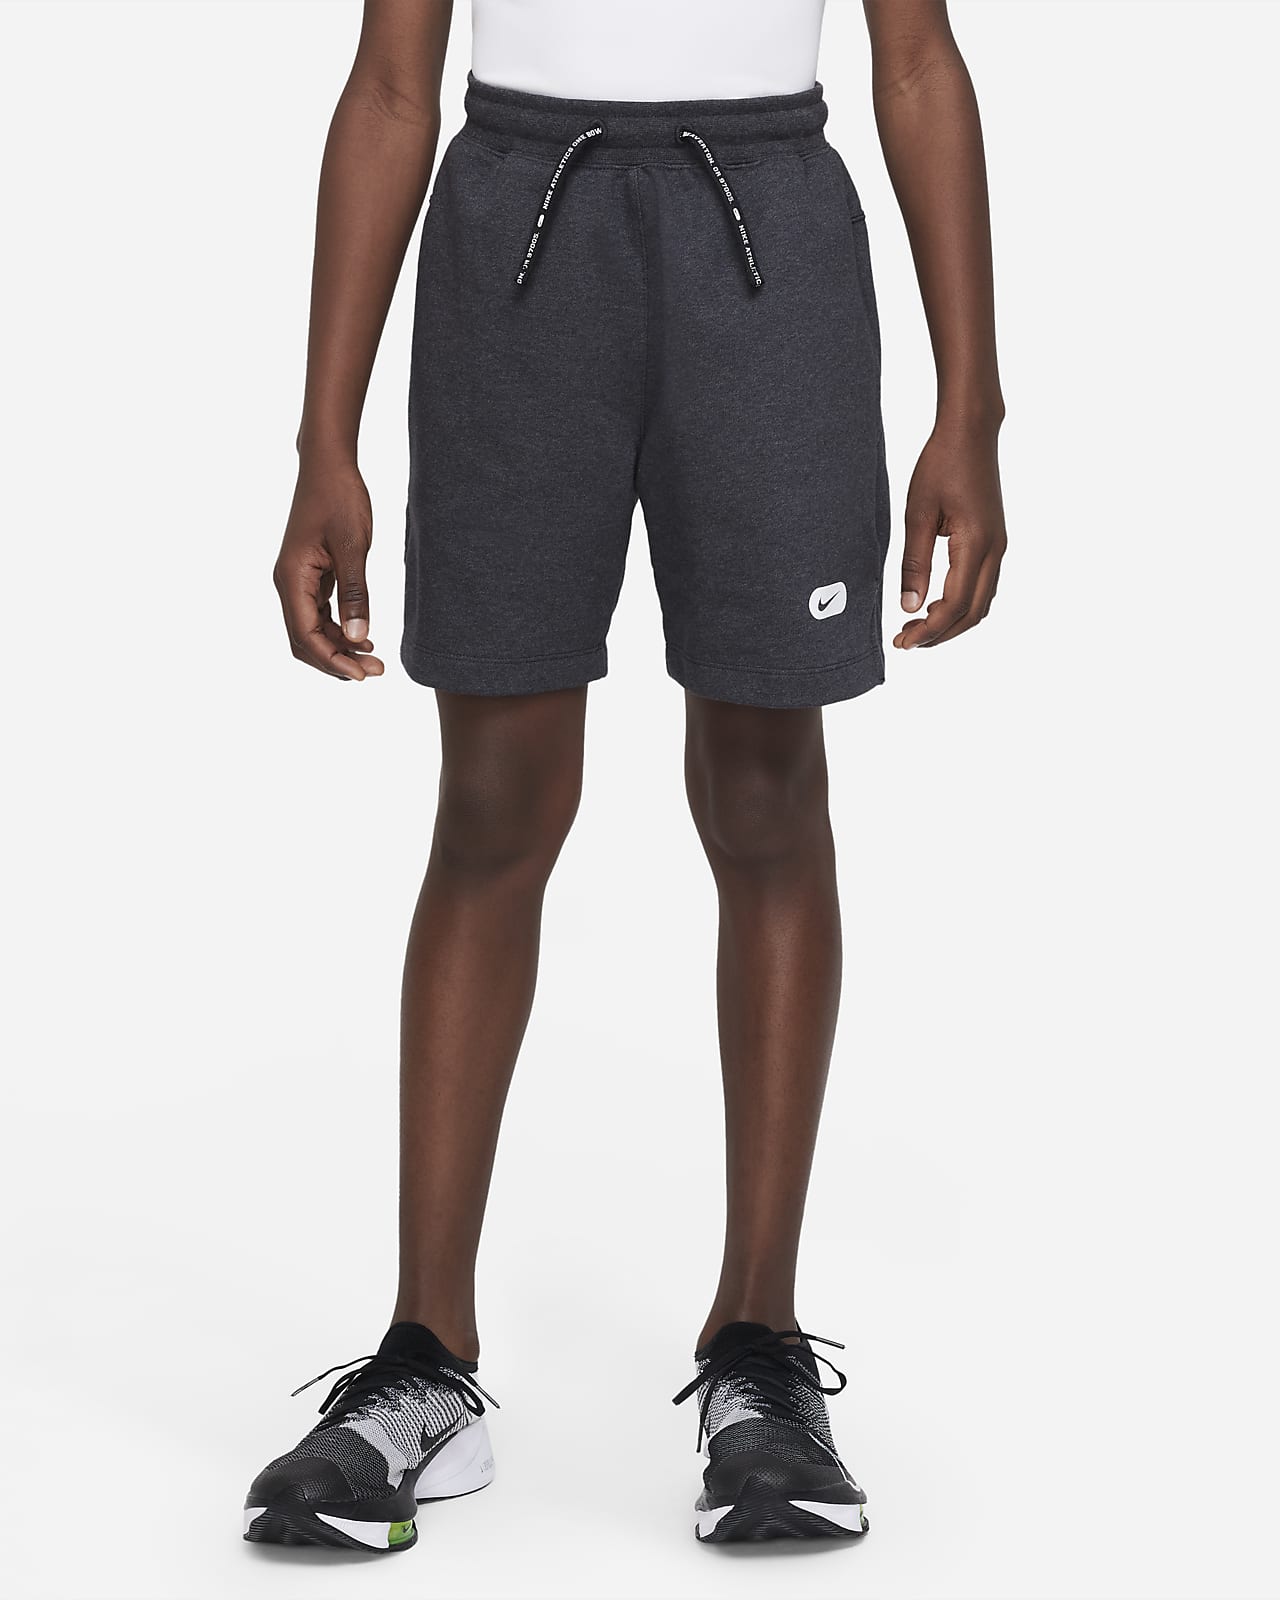 Träningsshorts Nike Dri-FIT Athletics i fleece för ungdom (killar)